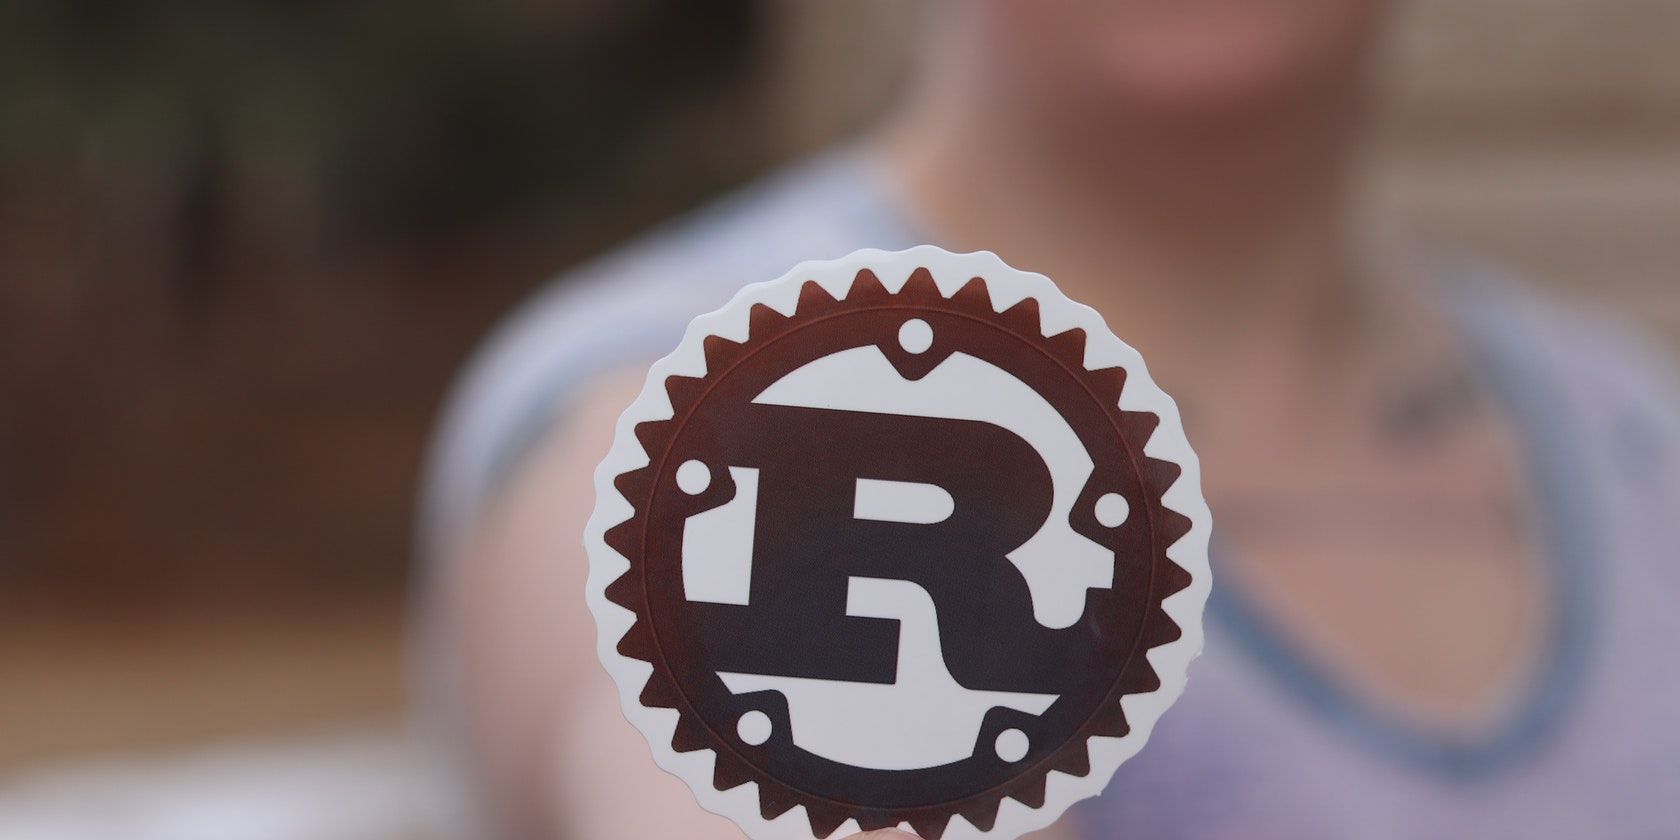 Rust programming language logo